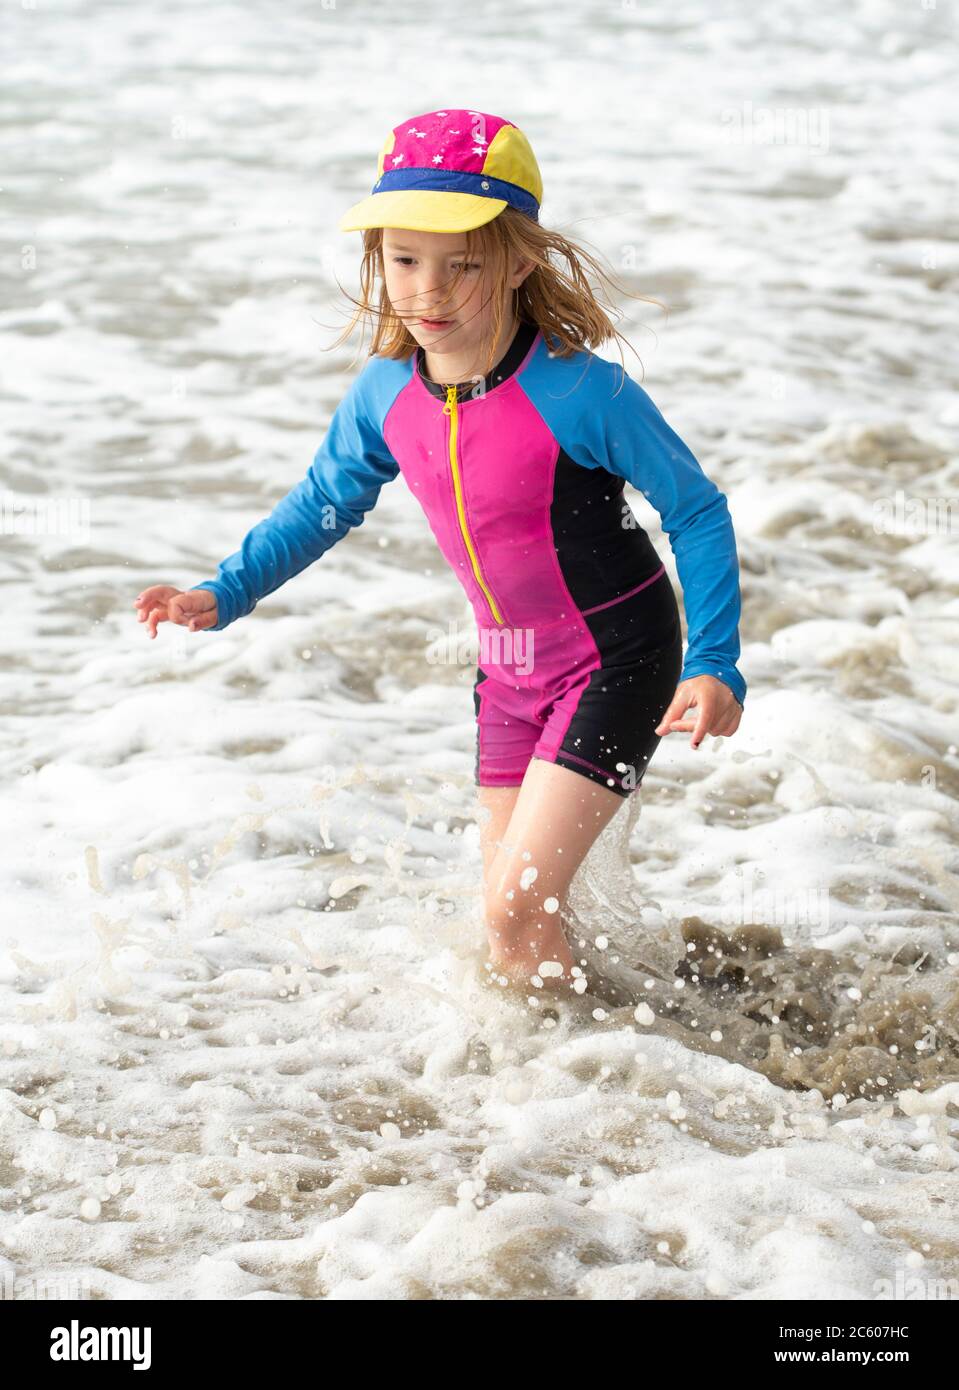 Jeune fille de six ans, dans un maillot de bain lumineux courant et jouant sur une plage de sable Banque D'Images